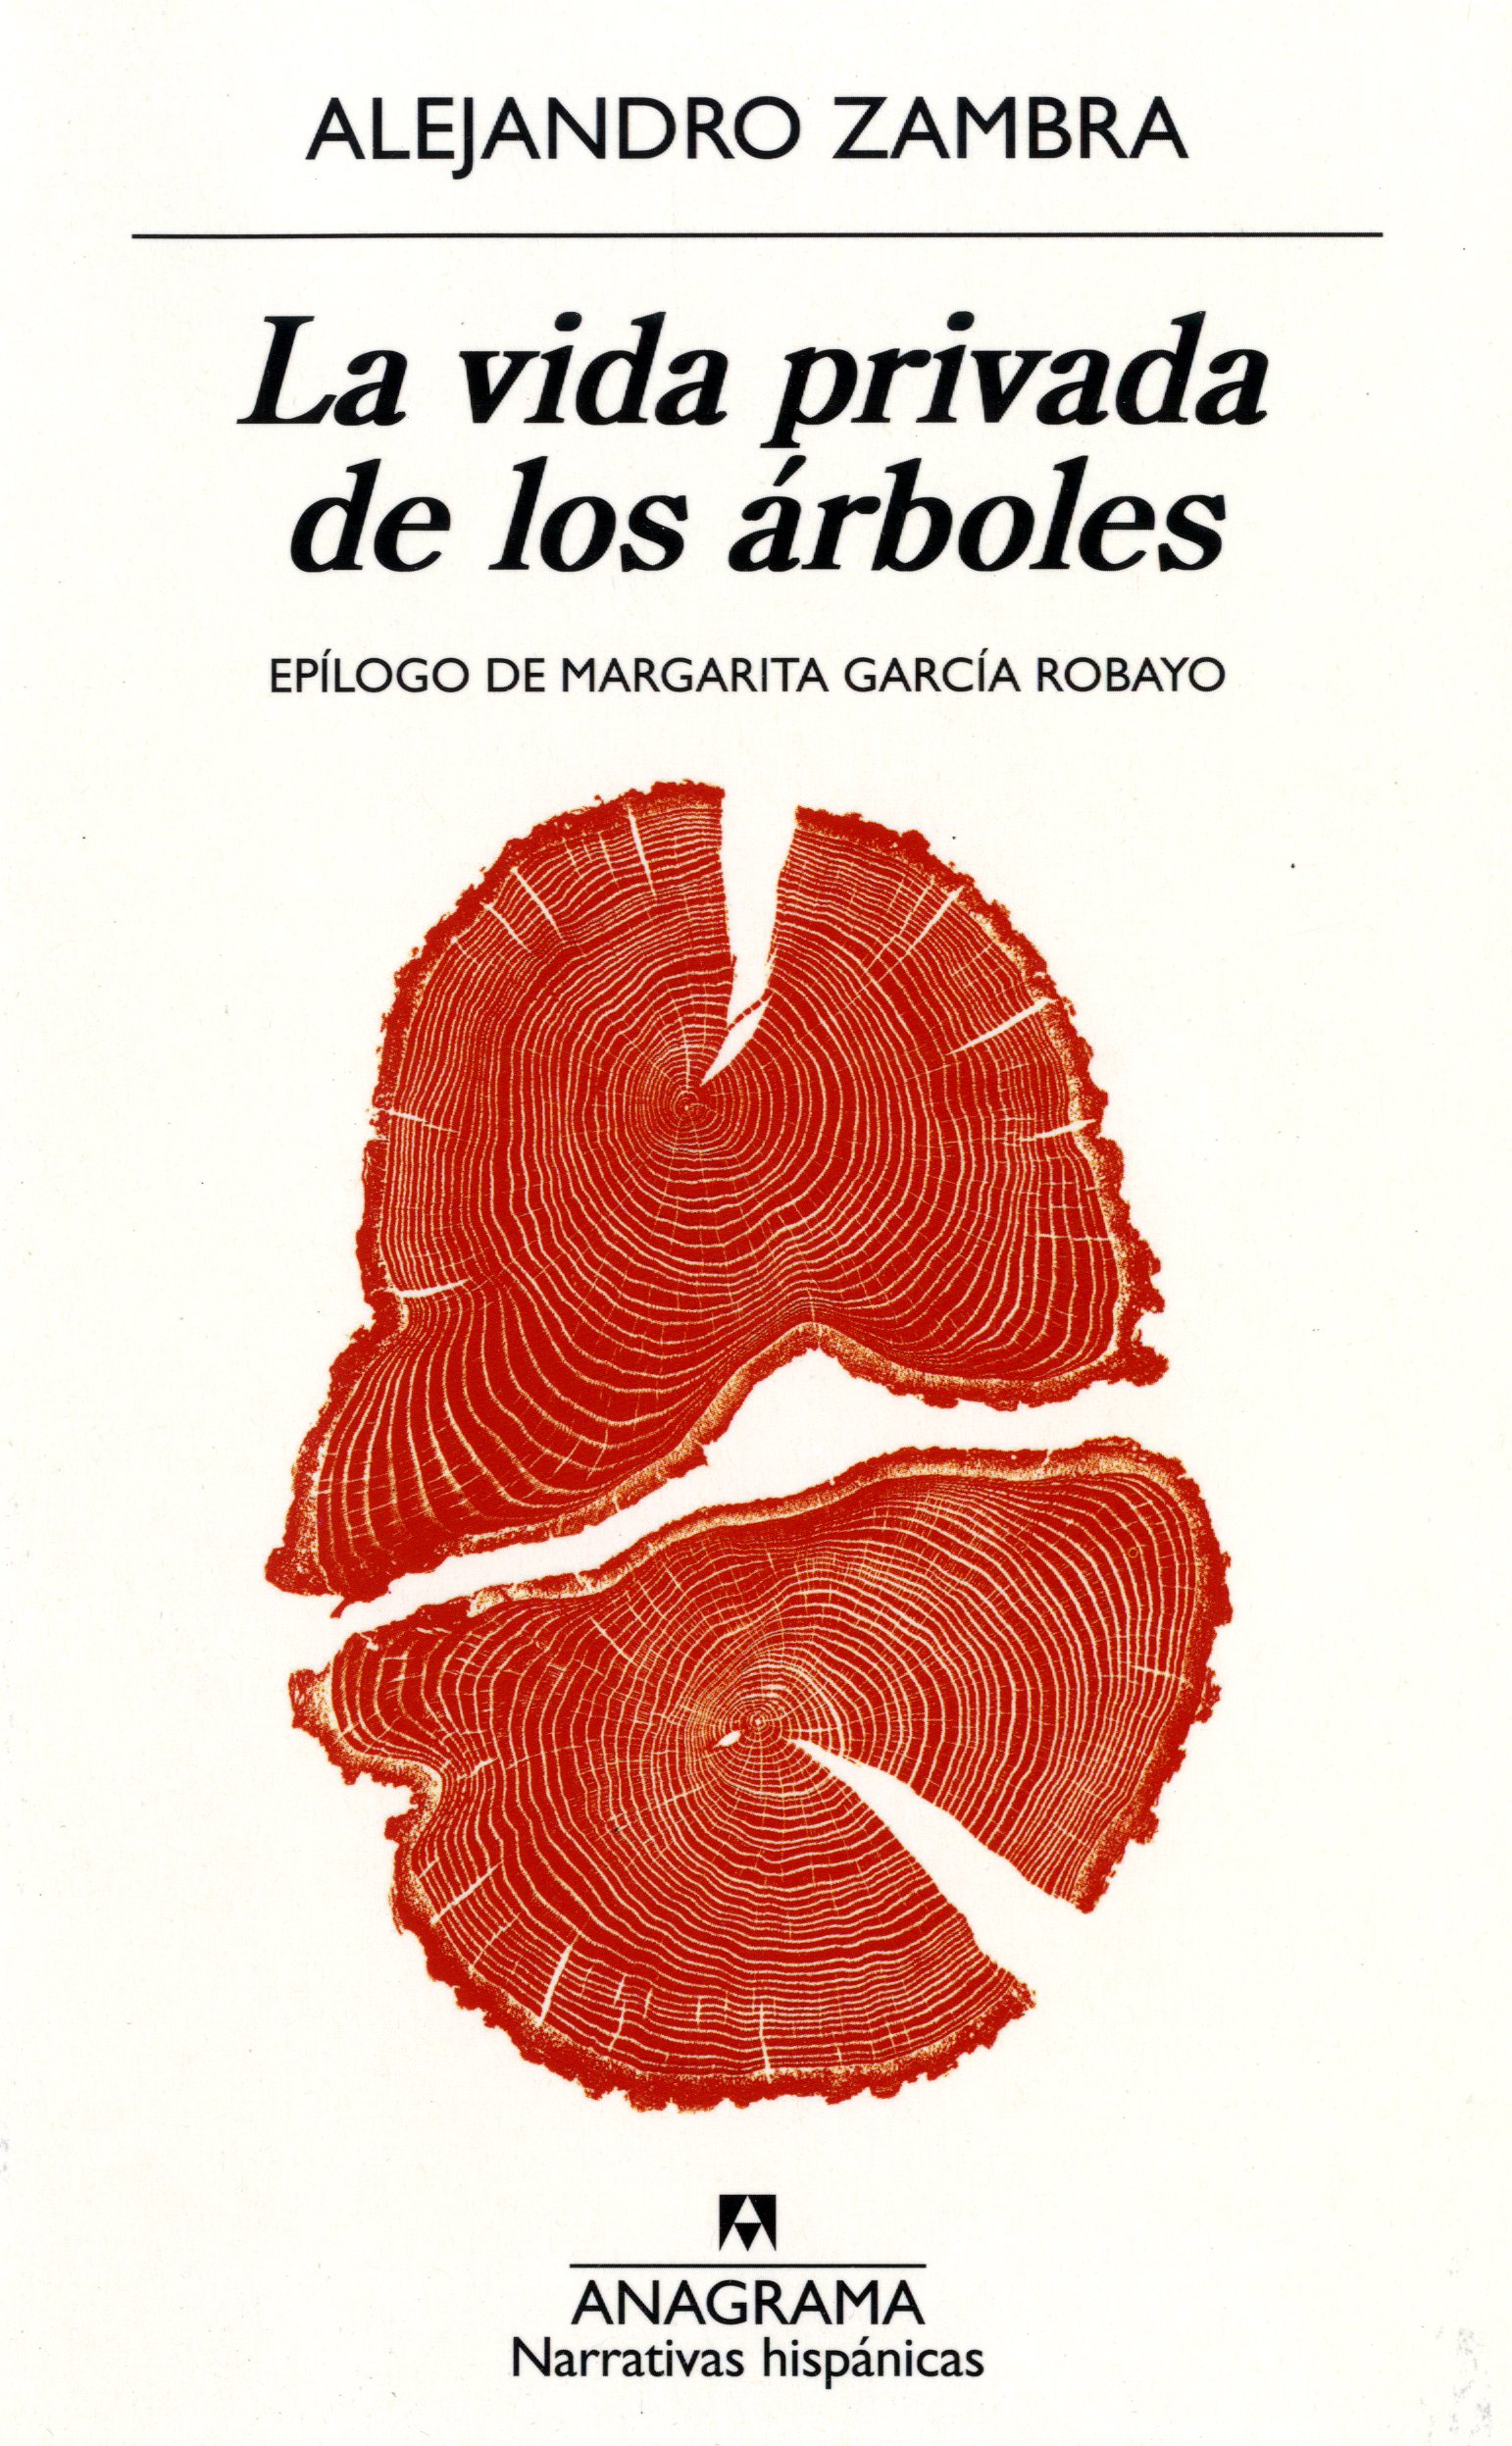 Imagen de cubierta del libro con la sección de un tronco de árbol color rojo